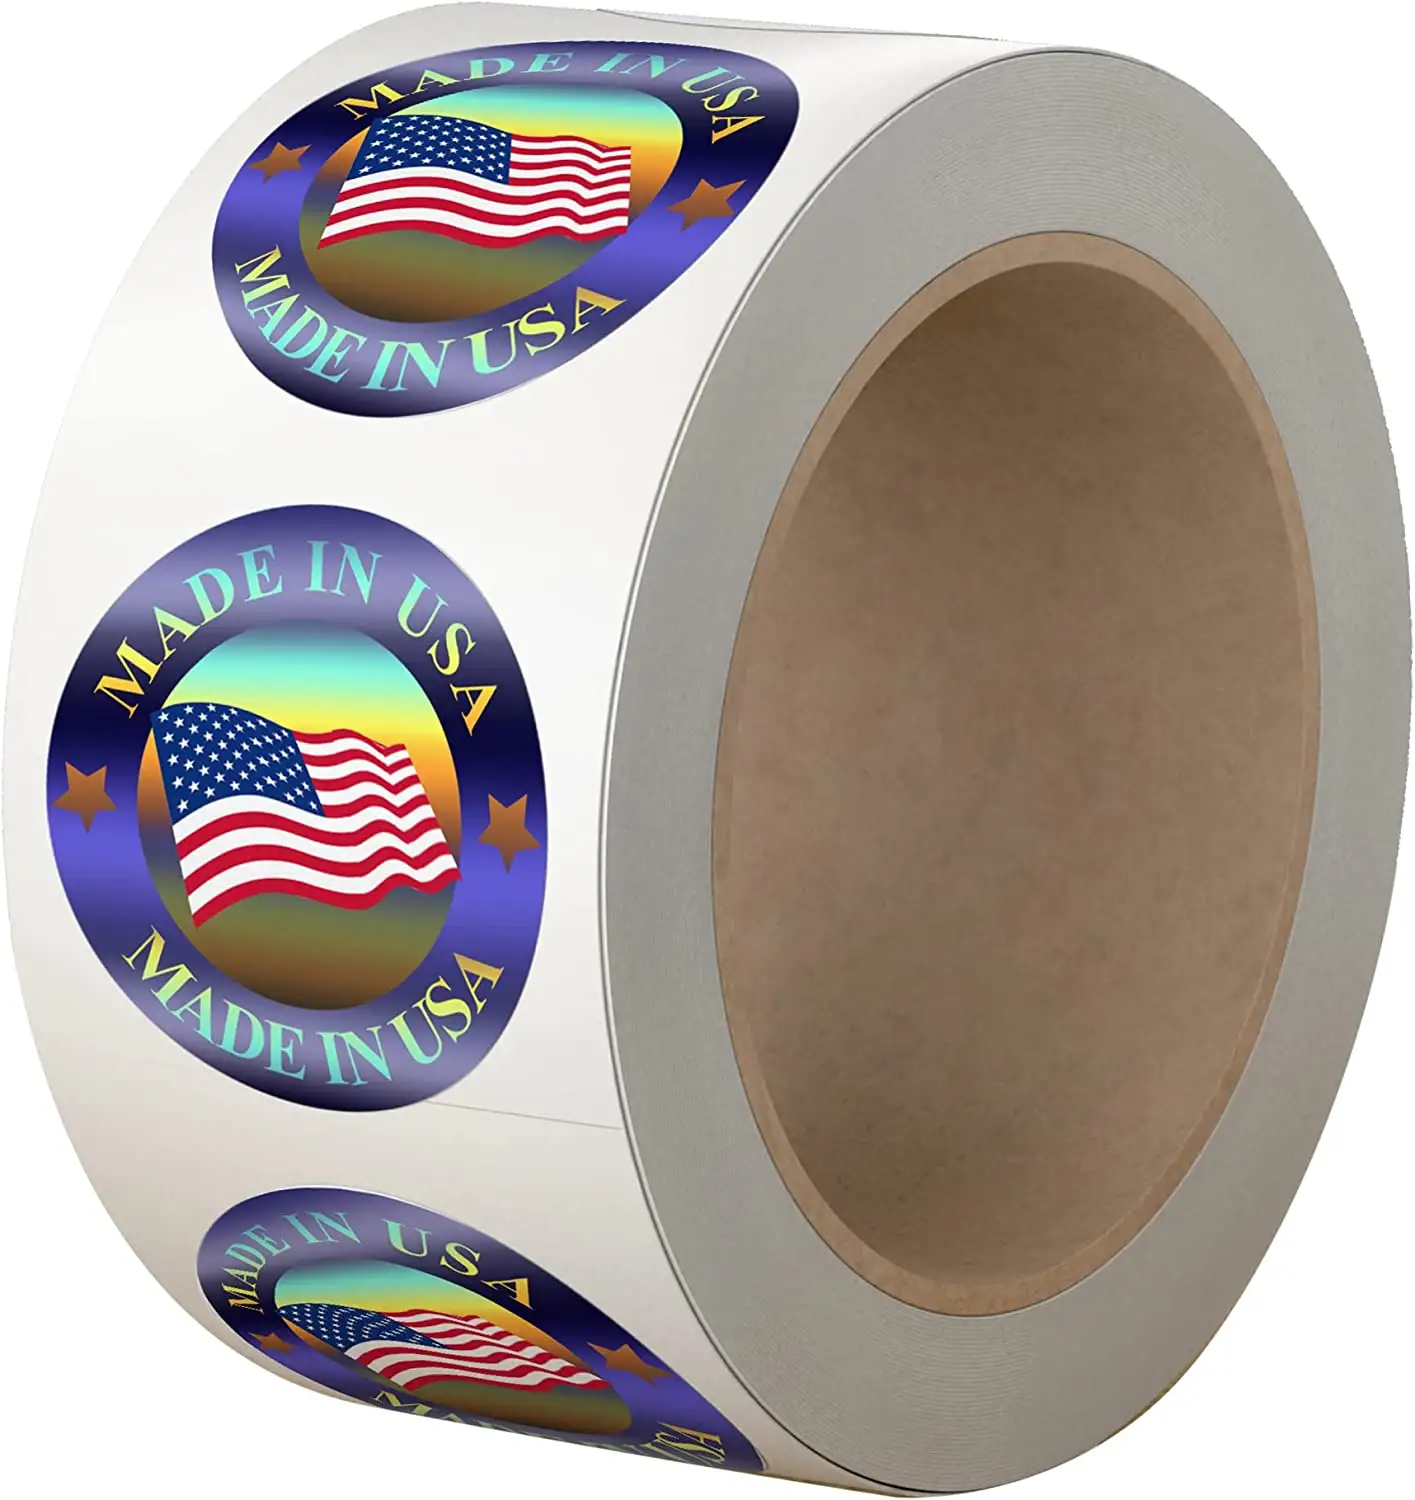 صورة ثلاثية الأبعاد عالية الجودة مصنوعة في الولايات المتحدة الأمريكية بعلامة العلم الأمريكي المستديرة لعلامة المنتج والتعبئة